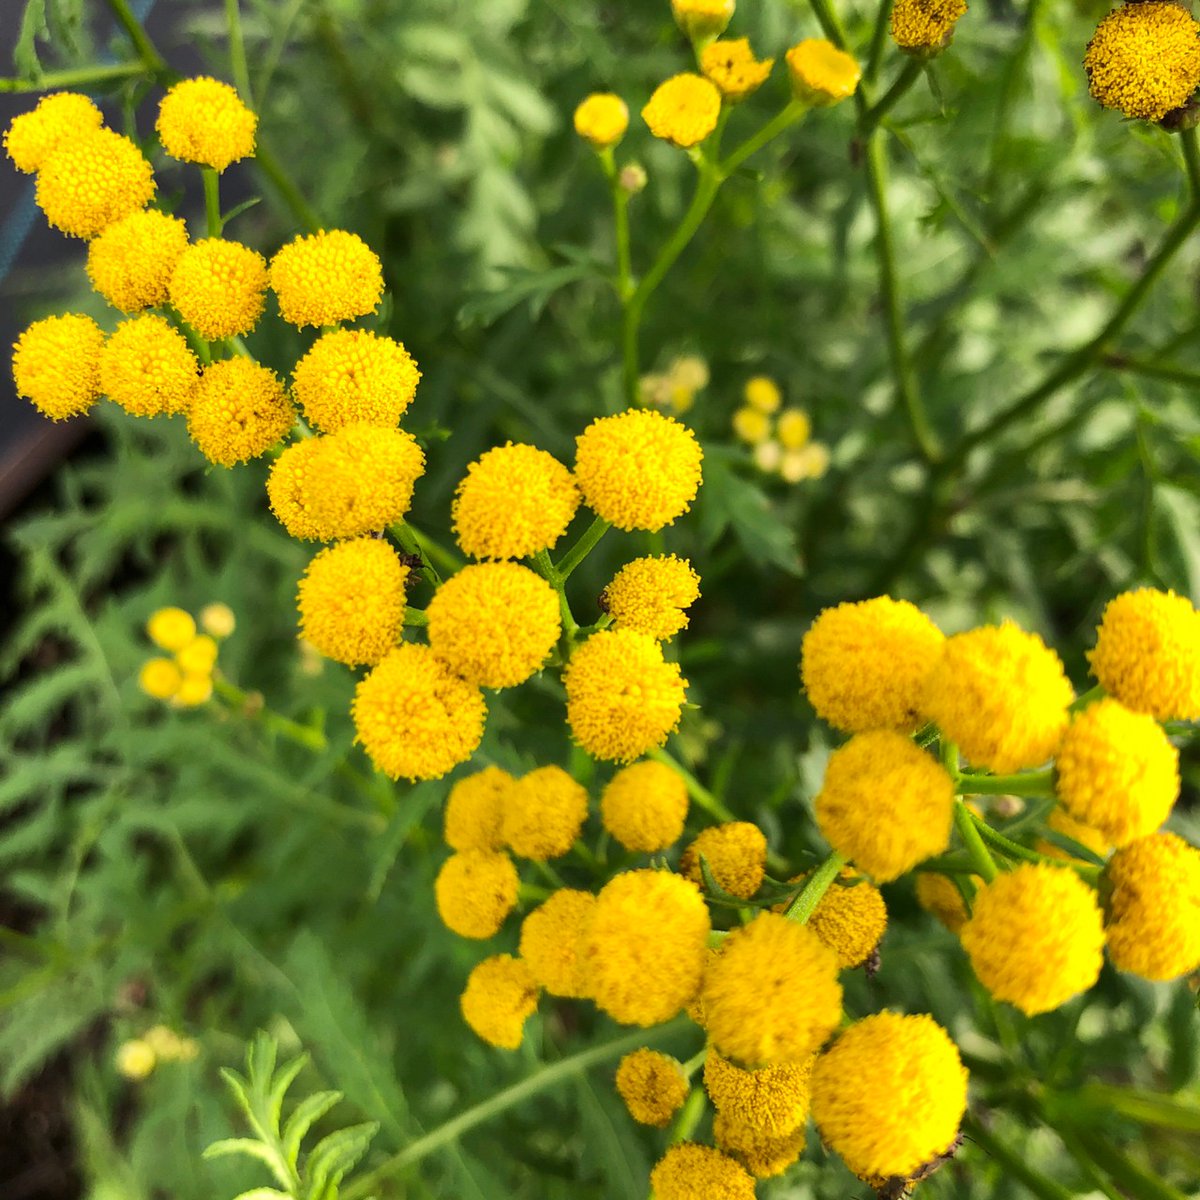 都立汐入公園 タンジー 汐入公園のハーブガーデンの中でも特に目立つのが 黄色いタンジーです 小さくて丸い花 の形が丁度洋服のボタンのようでとても可愛らしい花です 独特な香りには防虫効果があります 荒川区 ハーブガーデン ハーブ 黄色い